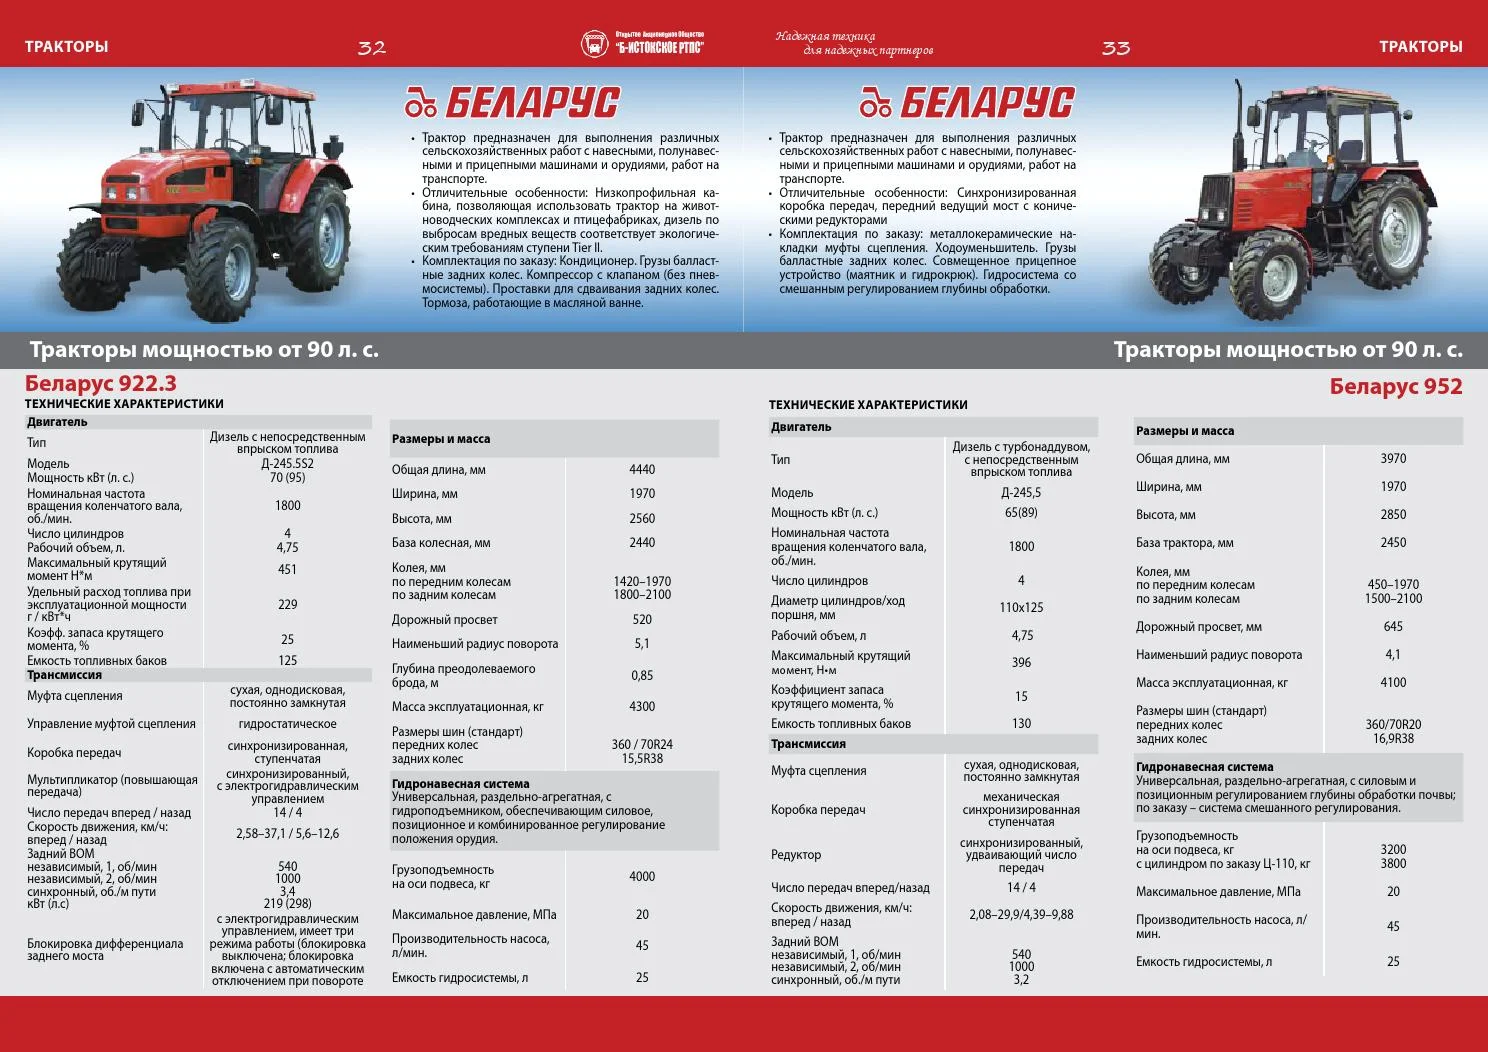 Обзор характеристик и возможностей многофункционального трактора Беларус 921 от МТЗ